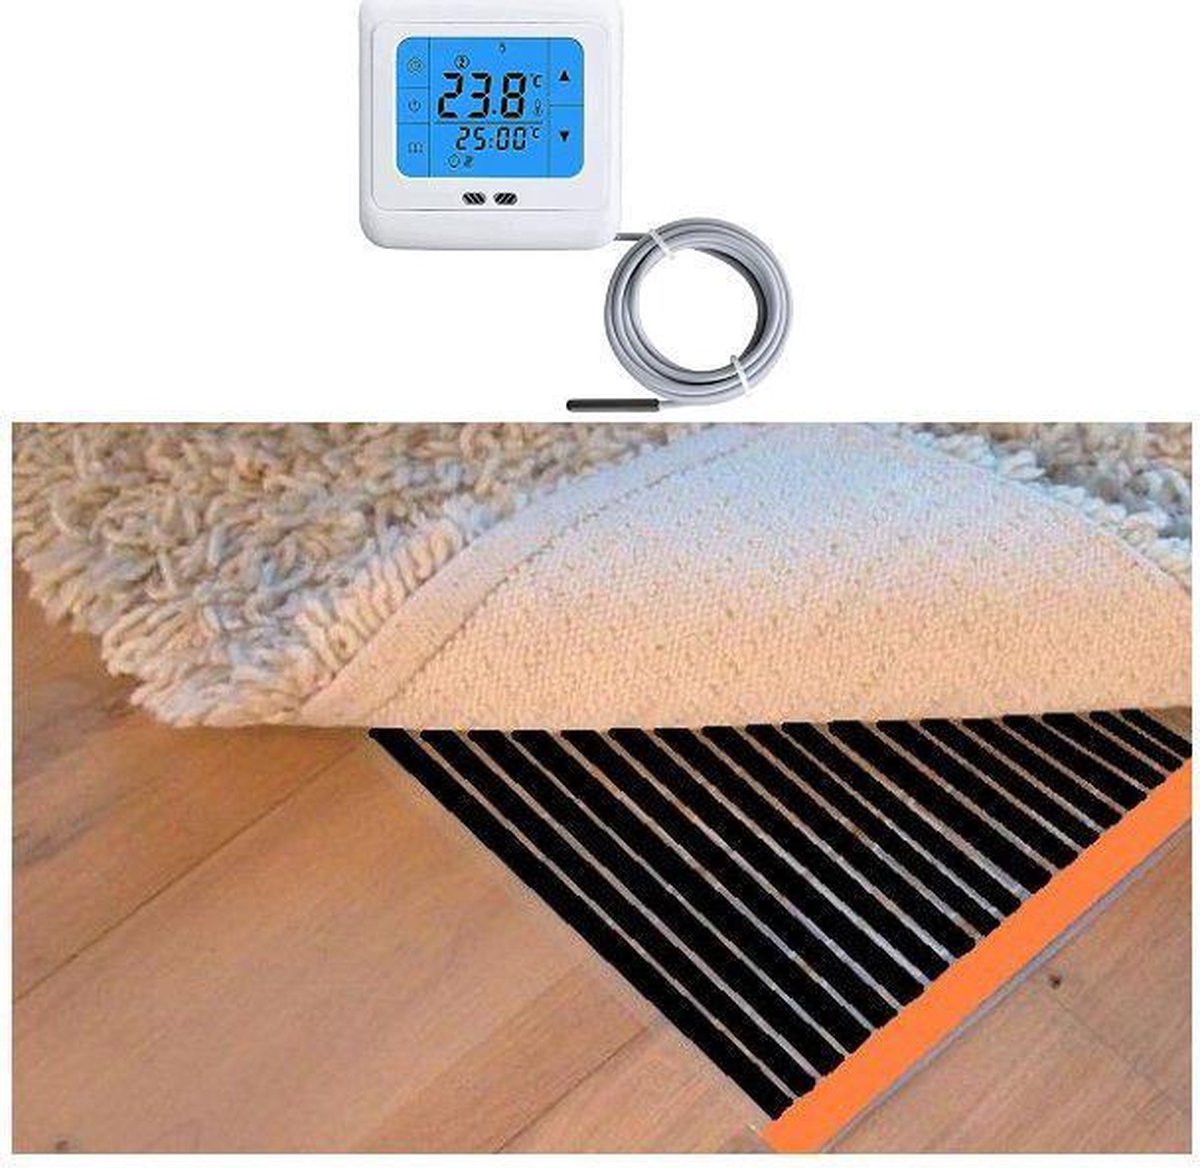 Woonkamer verwarmingsfolie infrarood folie voor vloerbedekking, tapijten vloerkleden elektrisch met TH 89 thermostaat 150 cm x 250 cm 600 Watt